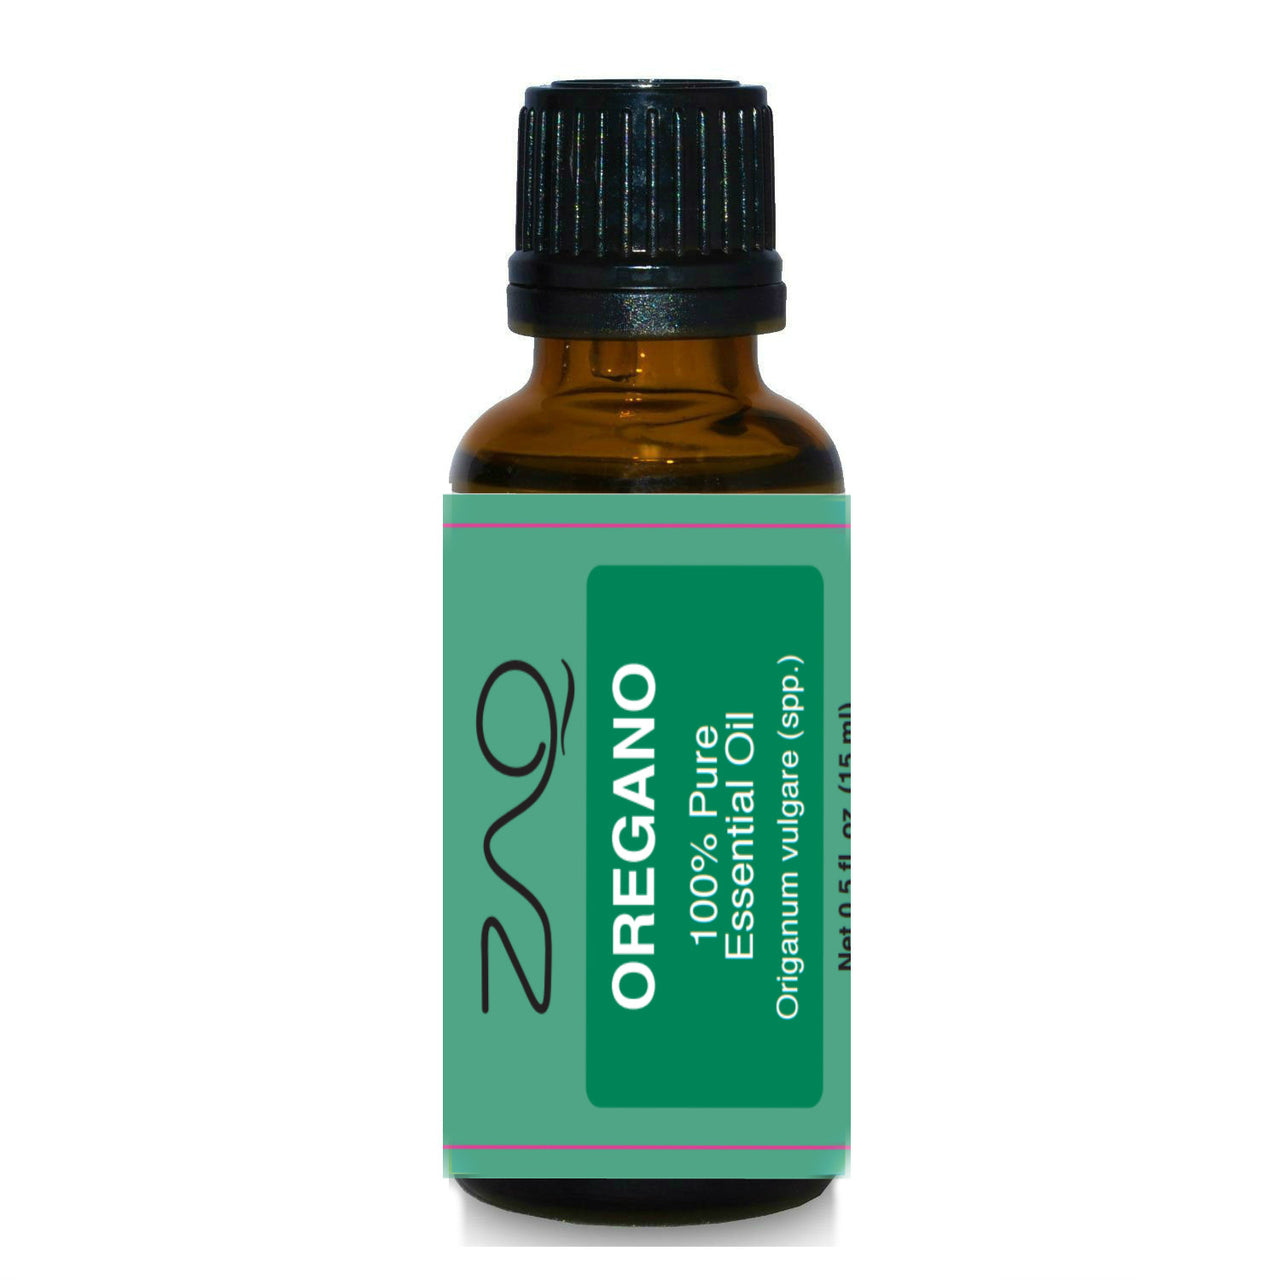 ZAQ Oregano Pure 100% Essential Oil 15ml - Popularelectronics.com